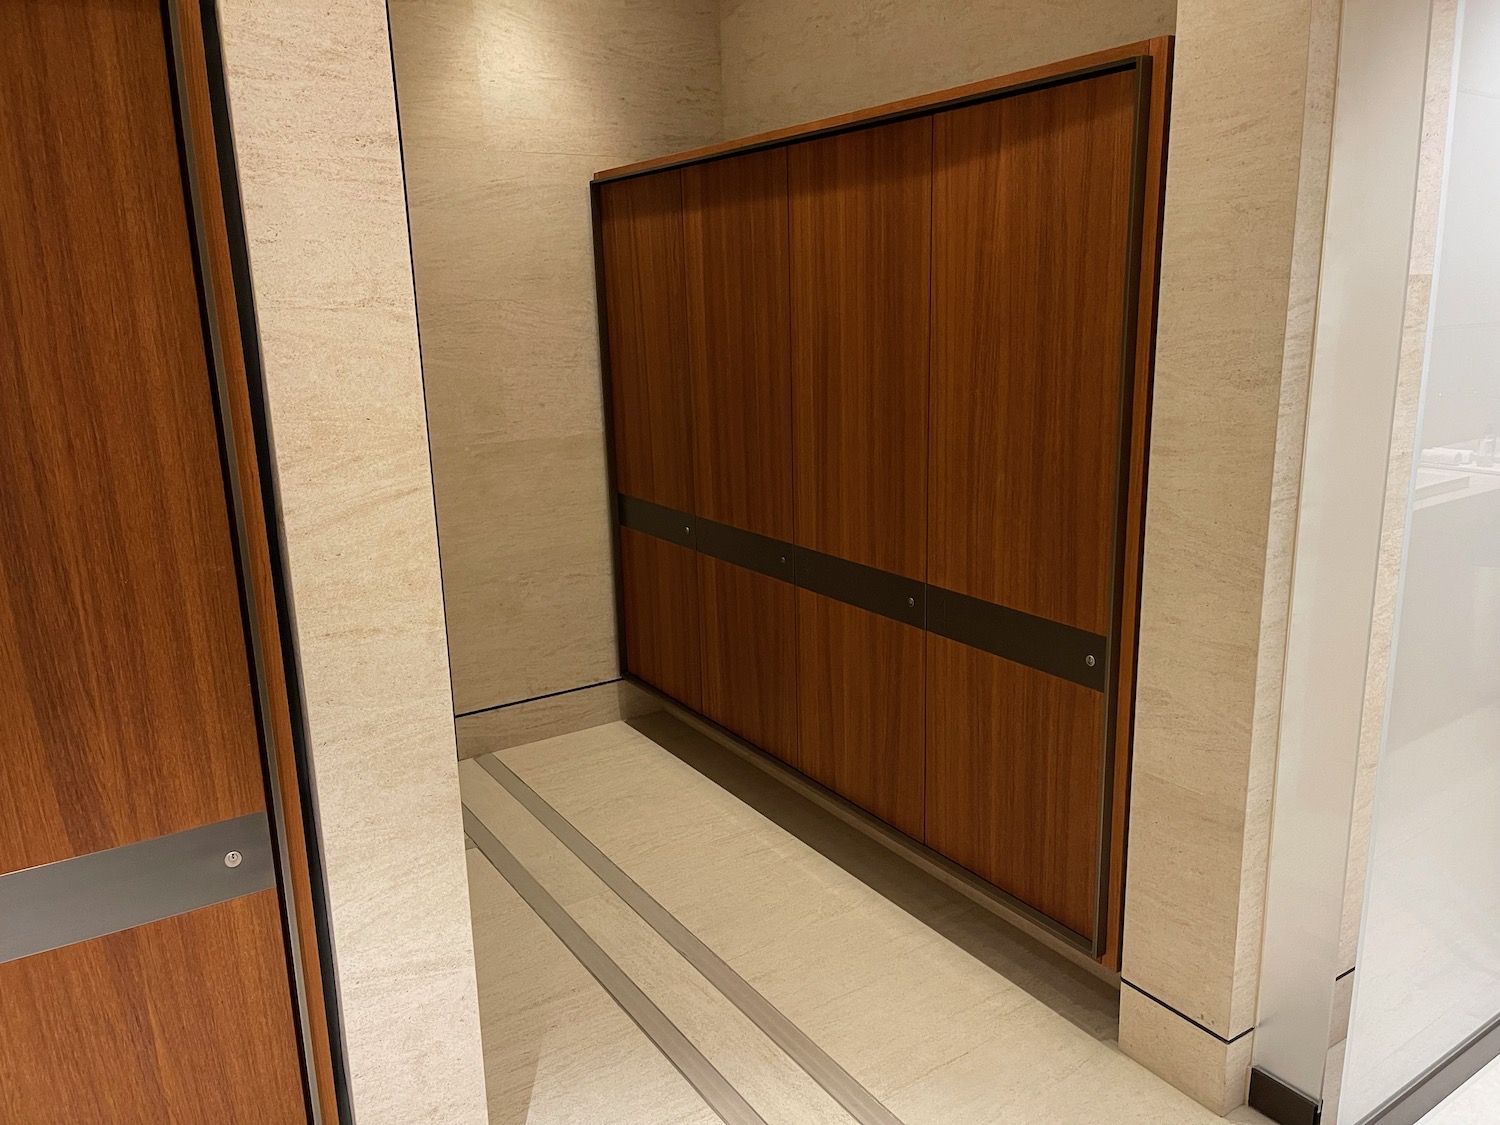 a wooden door in a room